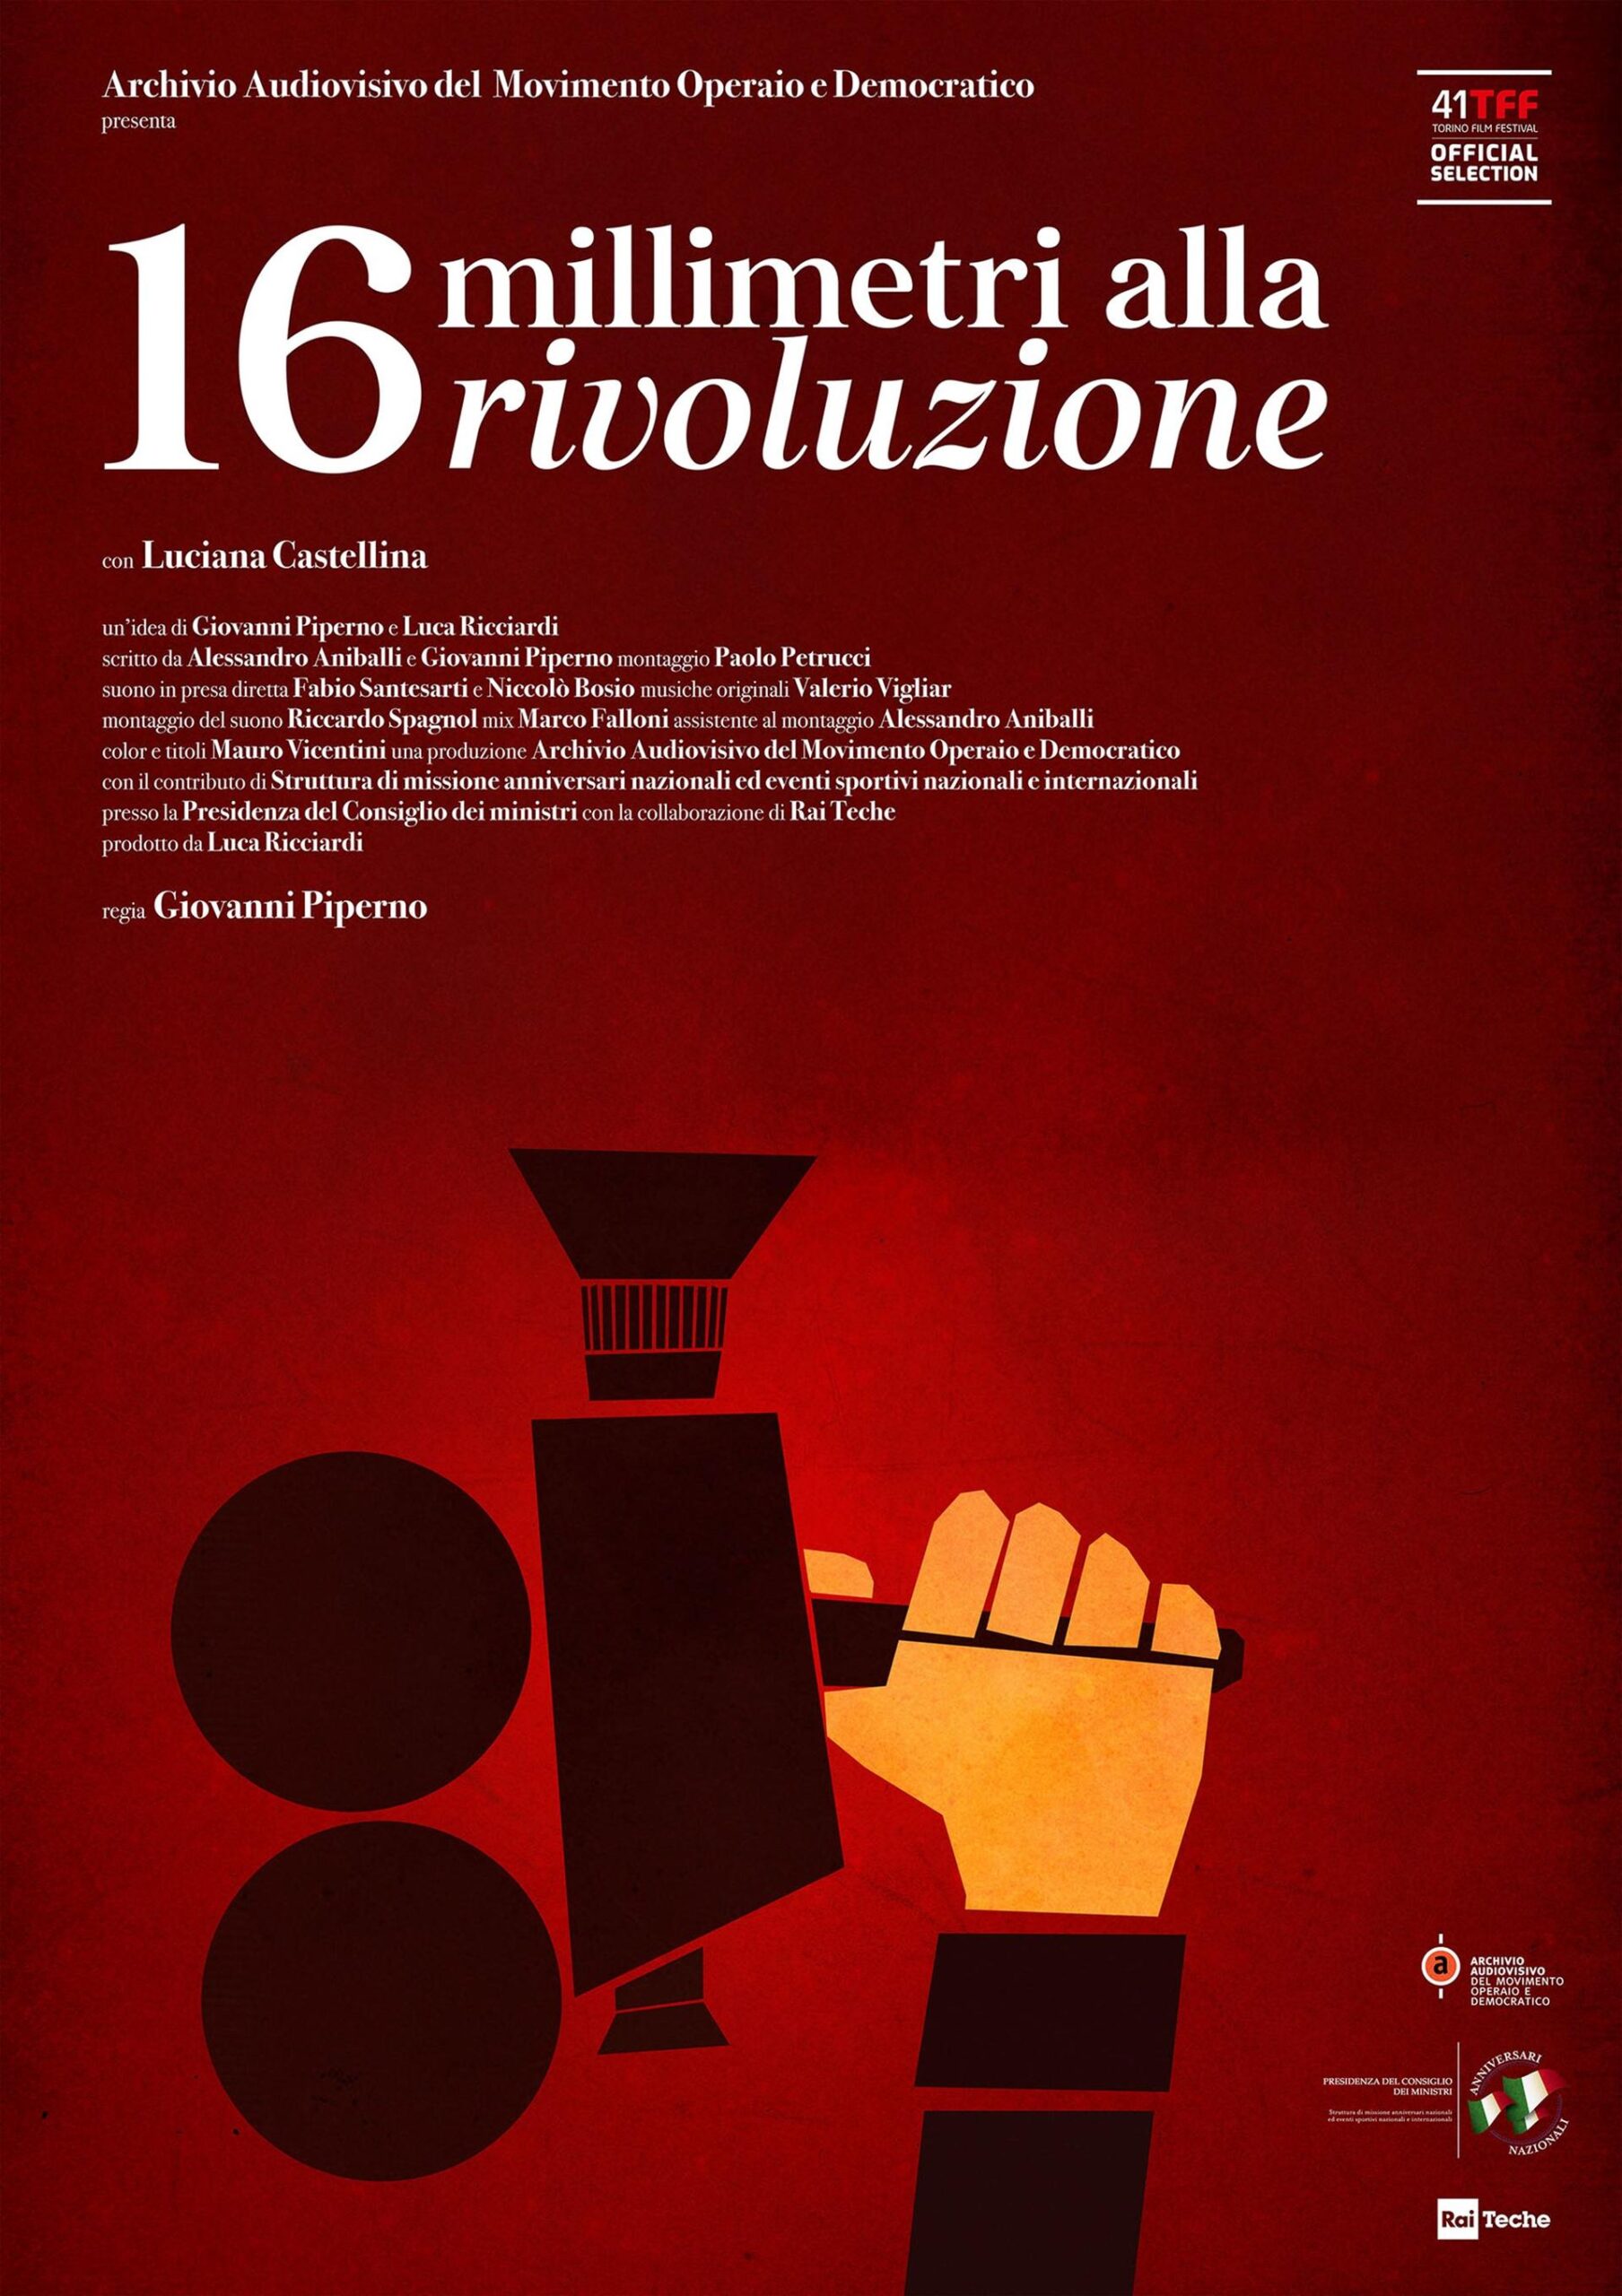 <strong>Al Torino Film Festival 16 MILLIMETRI ALLA RIVOLUZIONE, il docu-film sul PCI di Giovanni Piperno con Luciana Castellina (première 30 novembre)</strong>